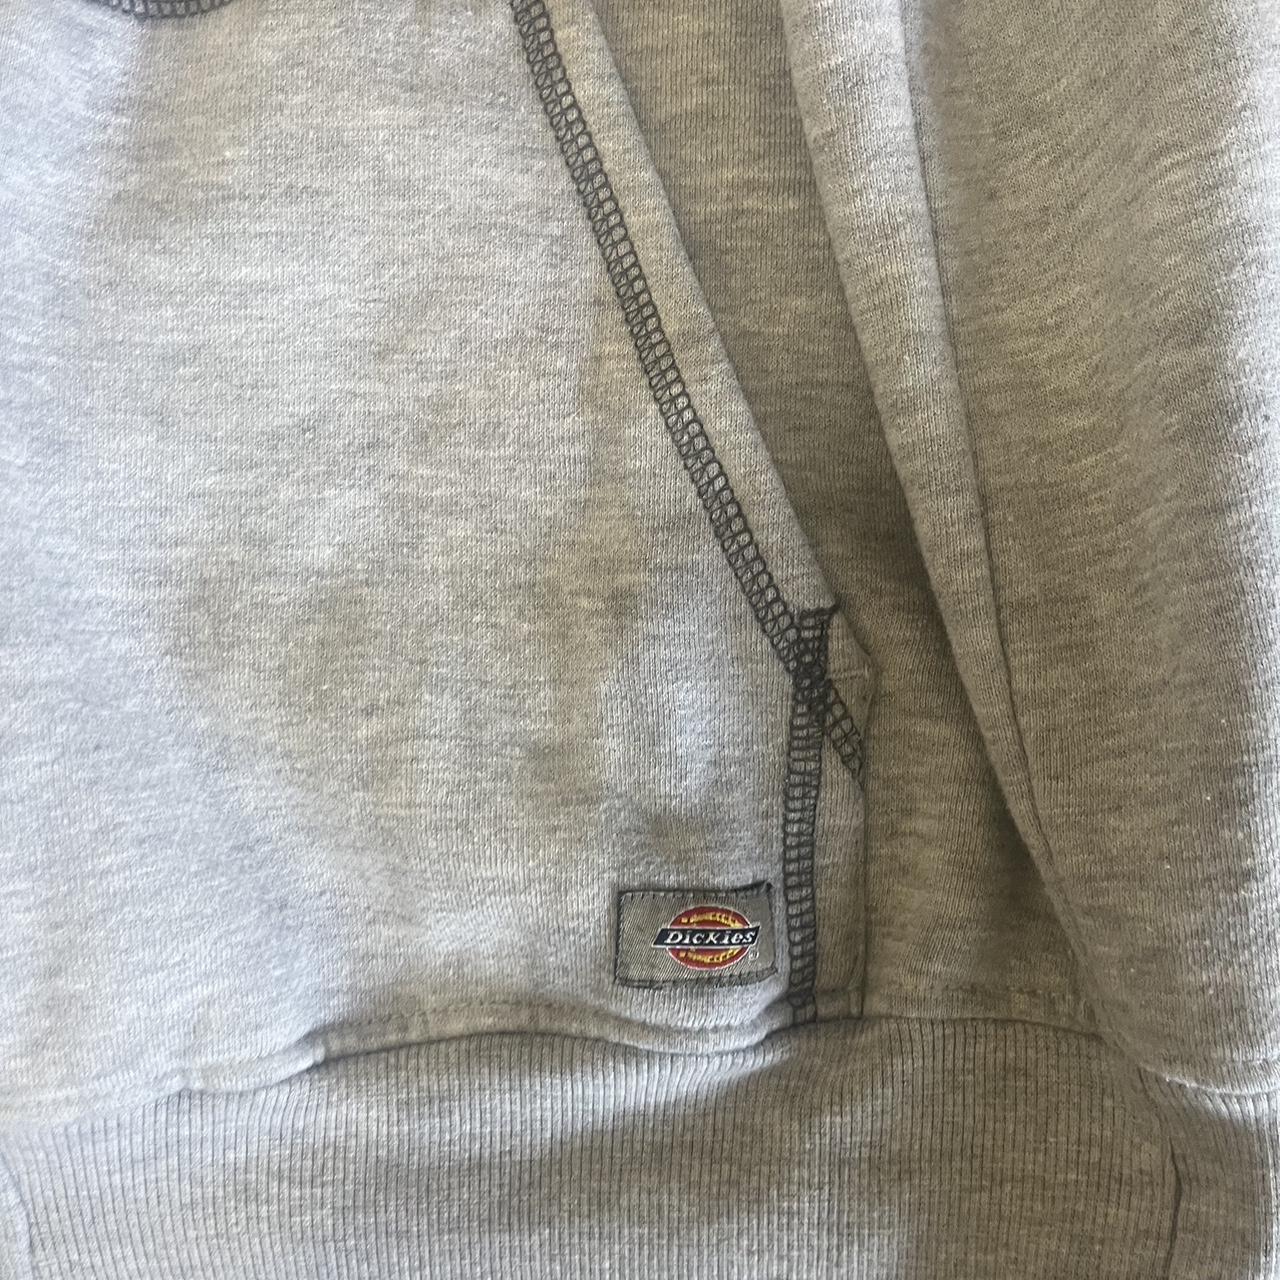 Dickies hoodie -embroidery/patch shown in last 2... - Depop